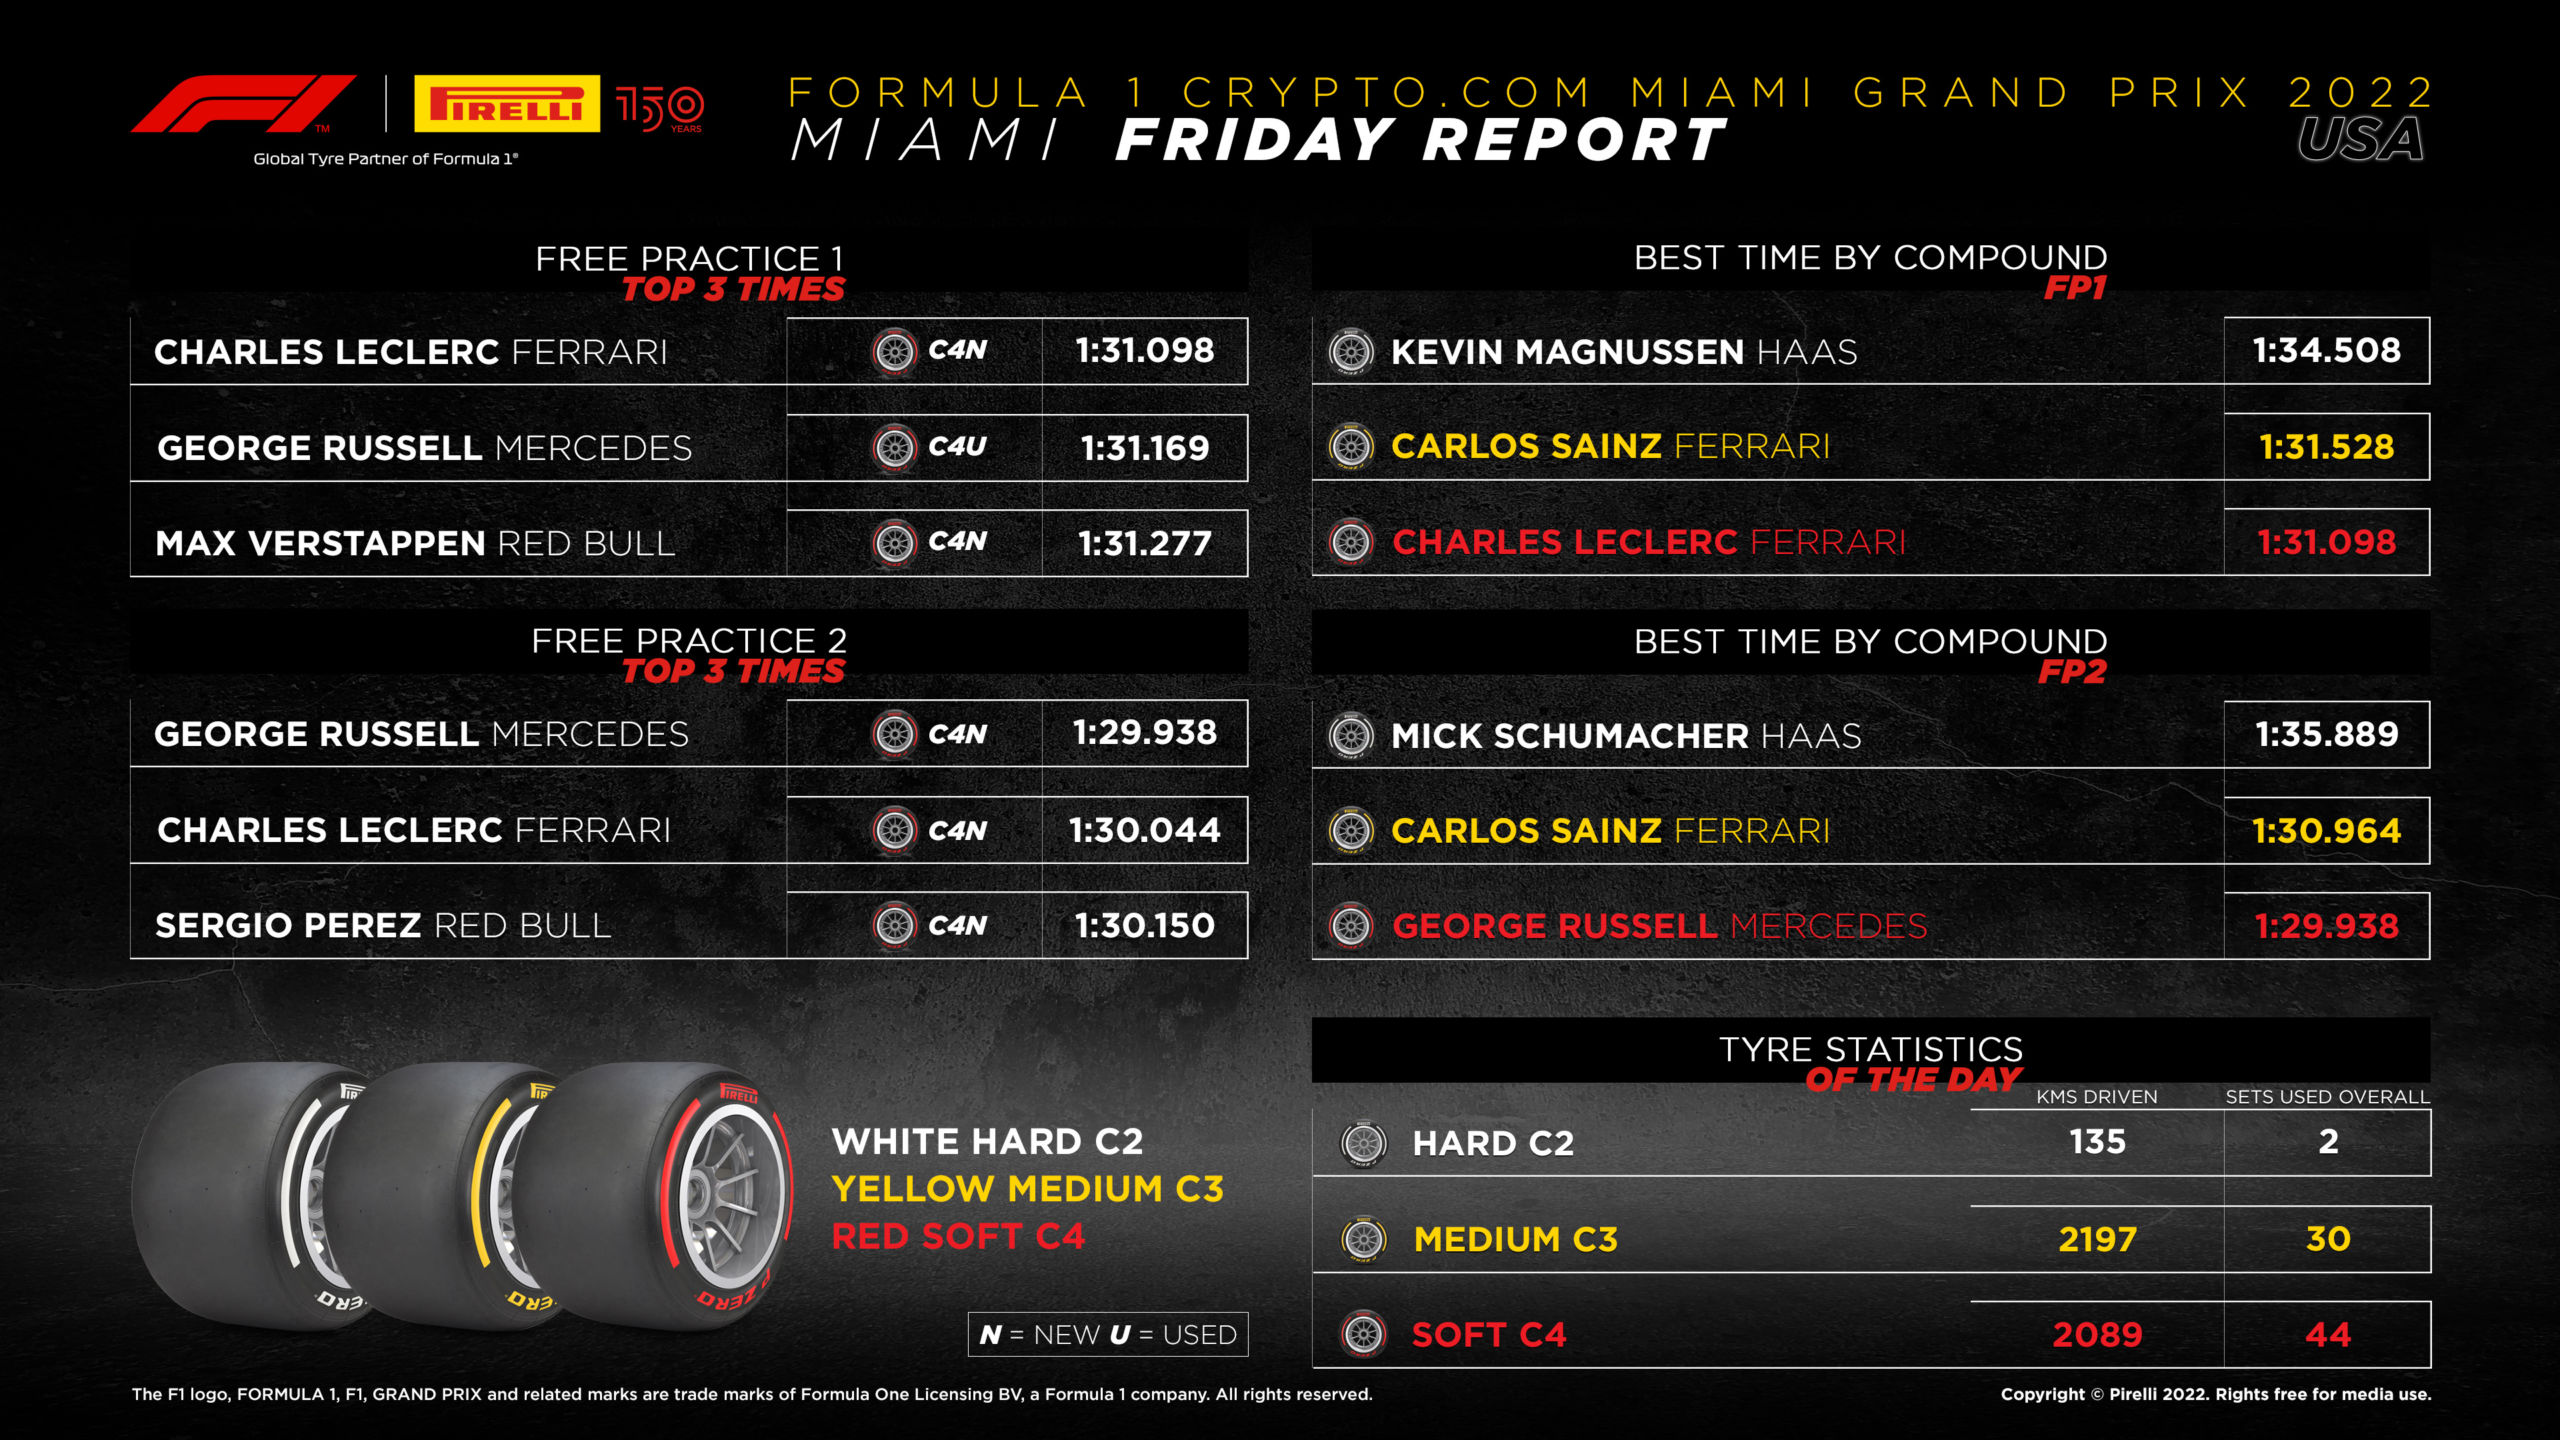 2022 Miami Grand Prix - Friday Tyre Analysis